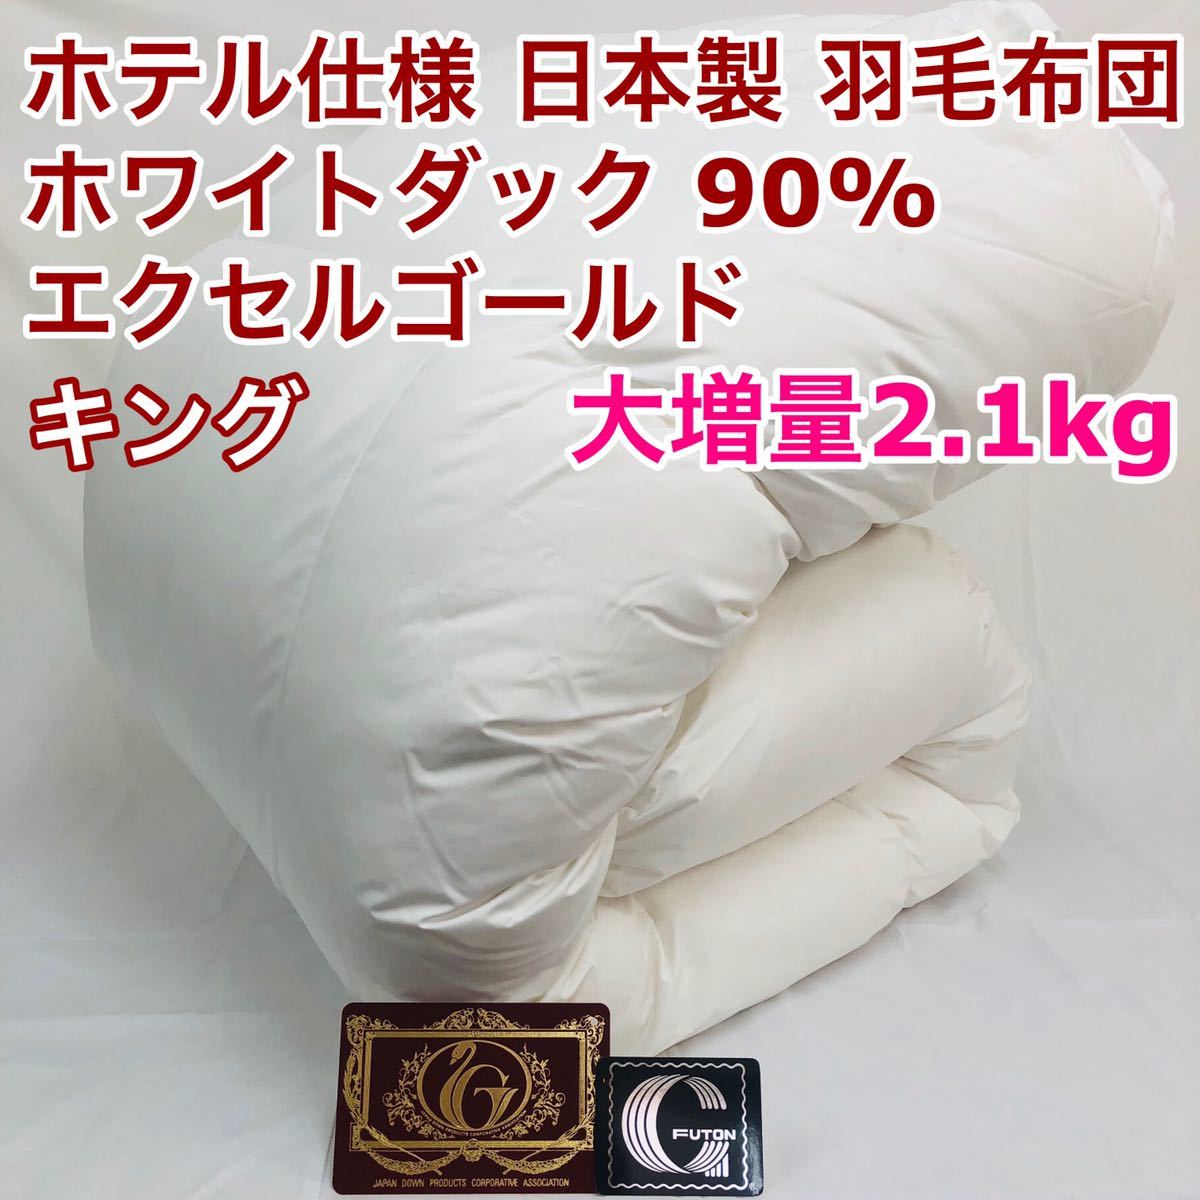 最低価格の 羽毛布団 キング 大増量 エクセルゴールド 白色 日本製 230×210cm キング用